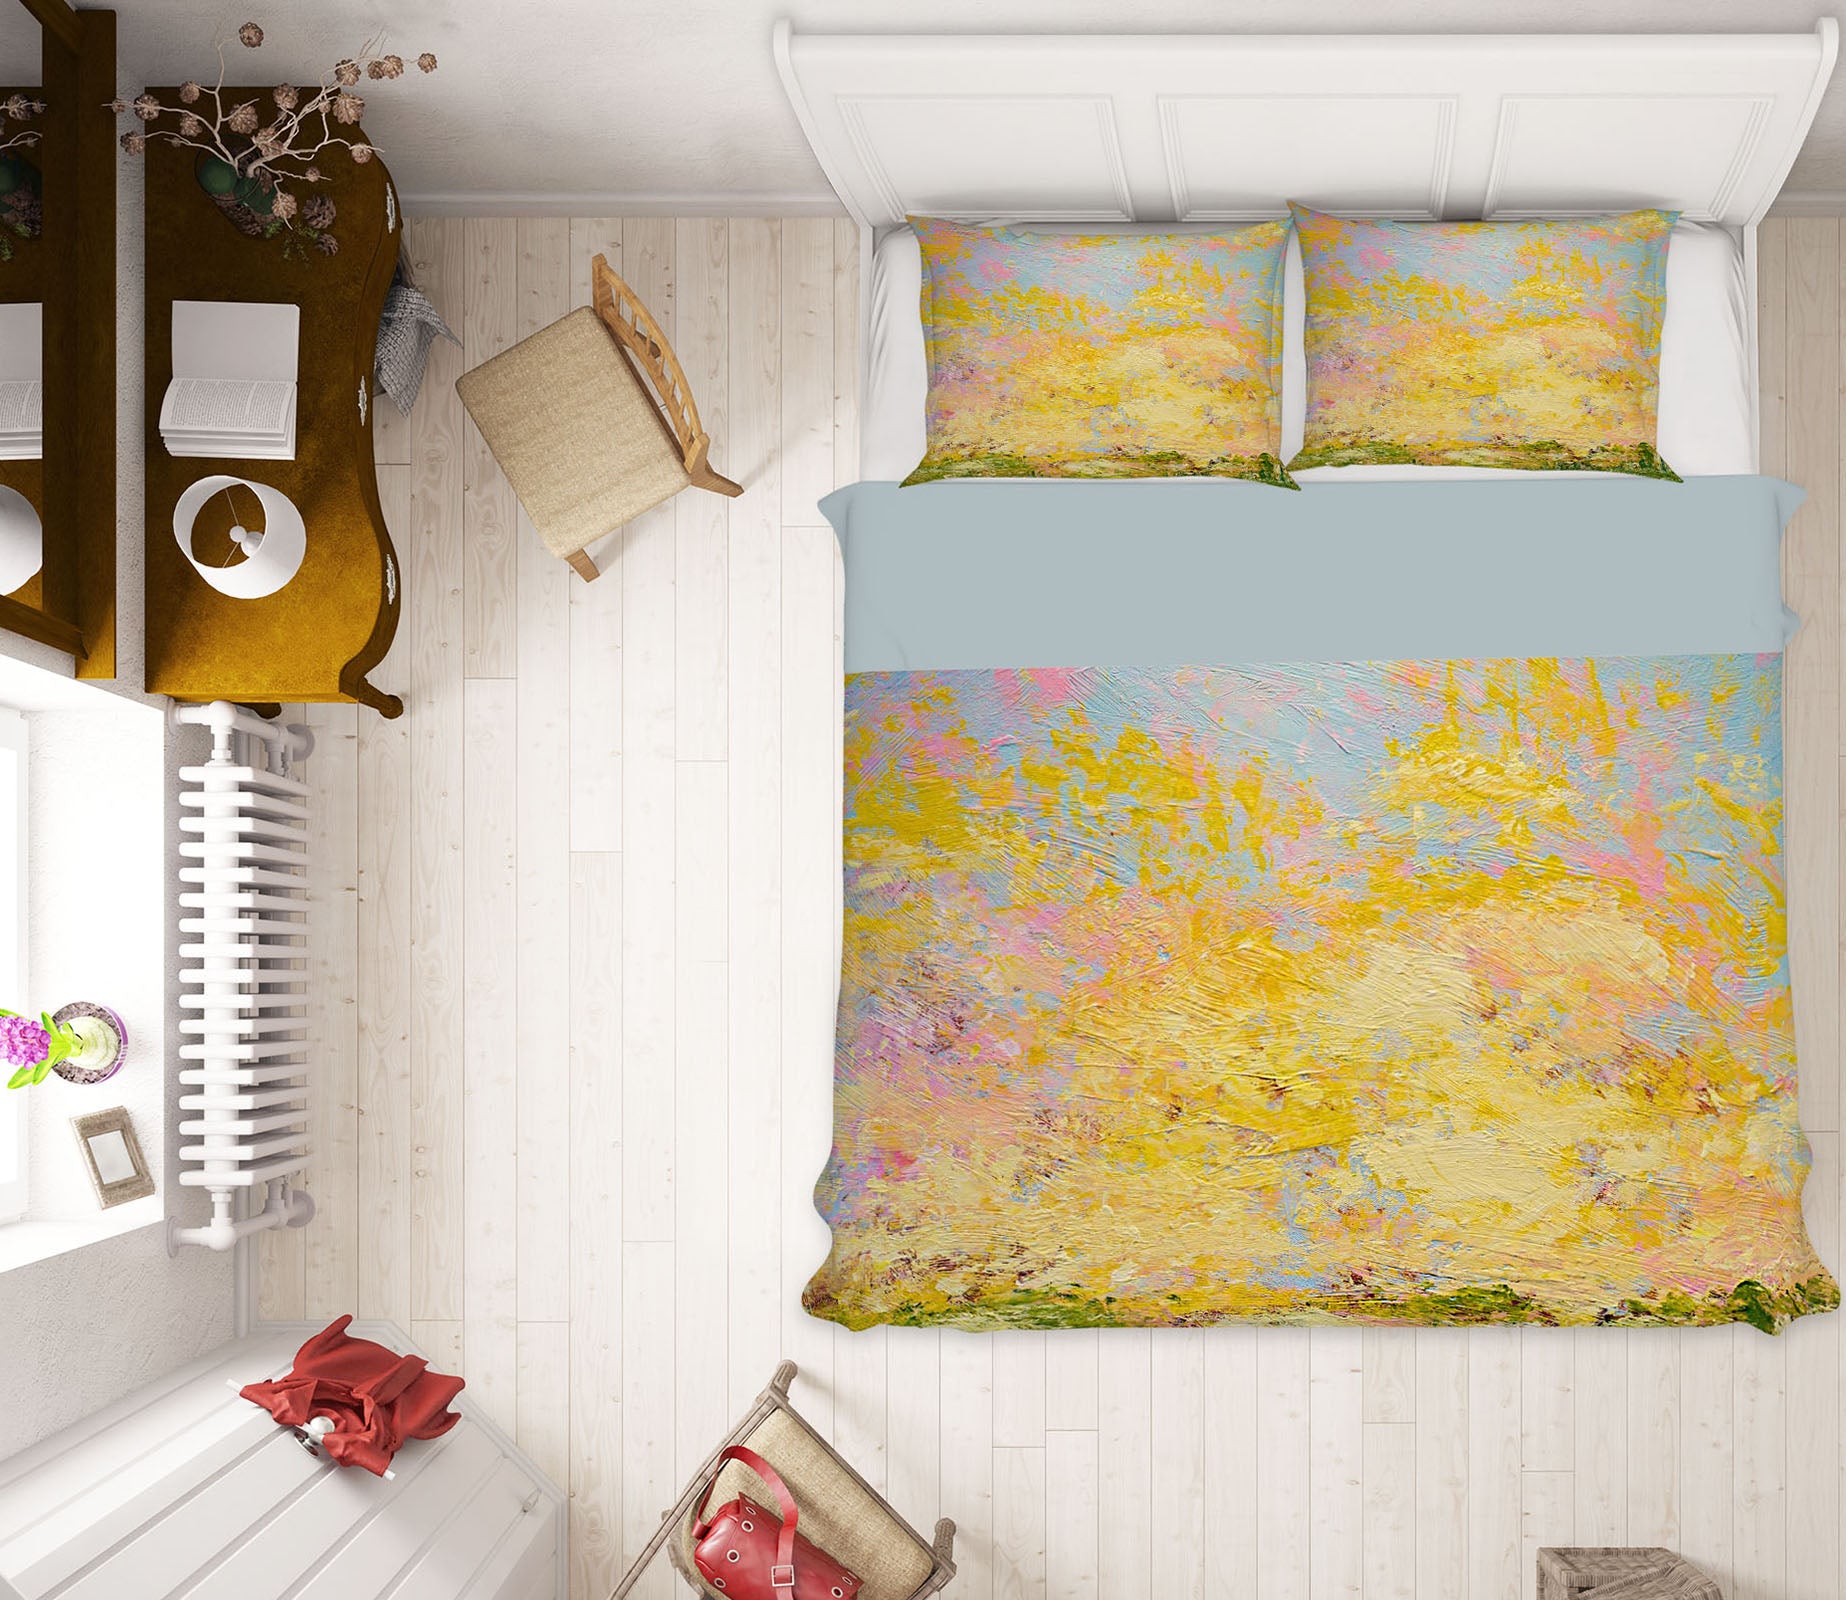 3D Yellow Paint 1063 Allan P. Friedlander Bedding Bed Pillowcases Quilt